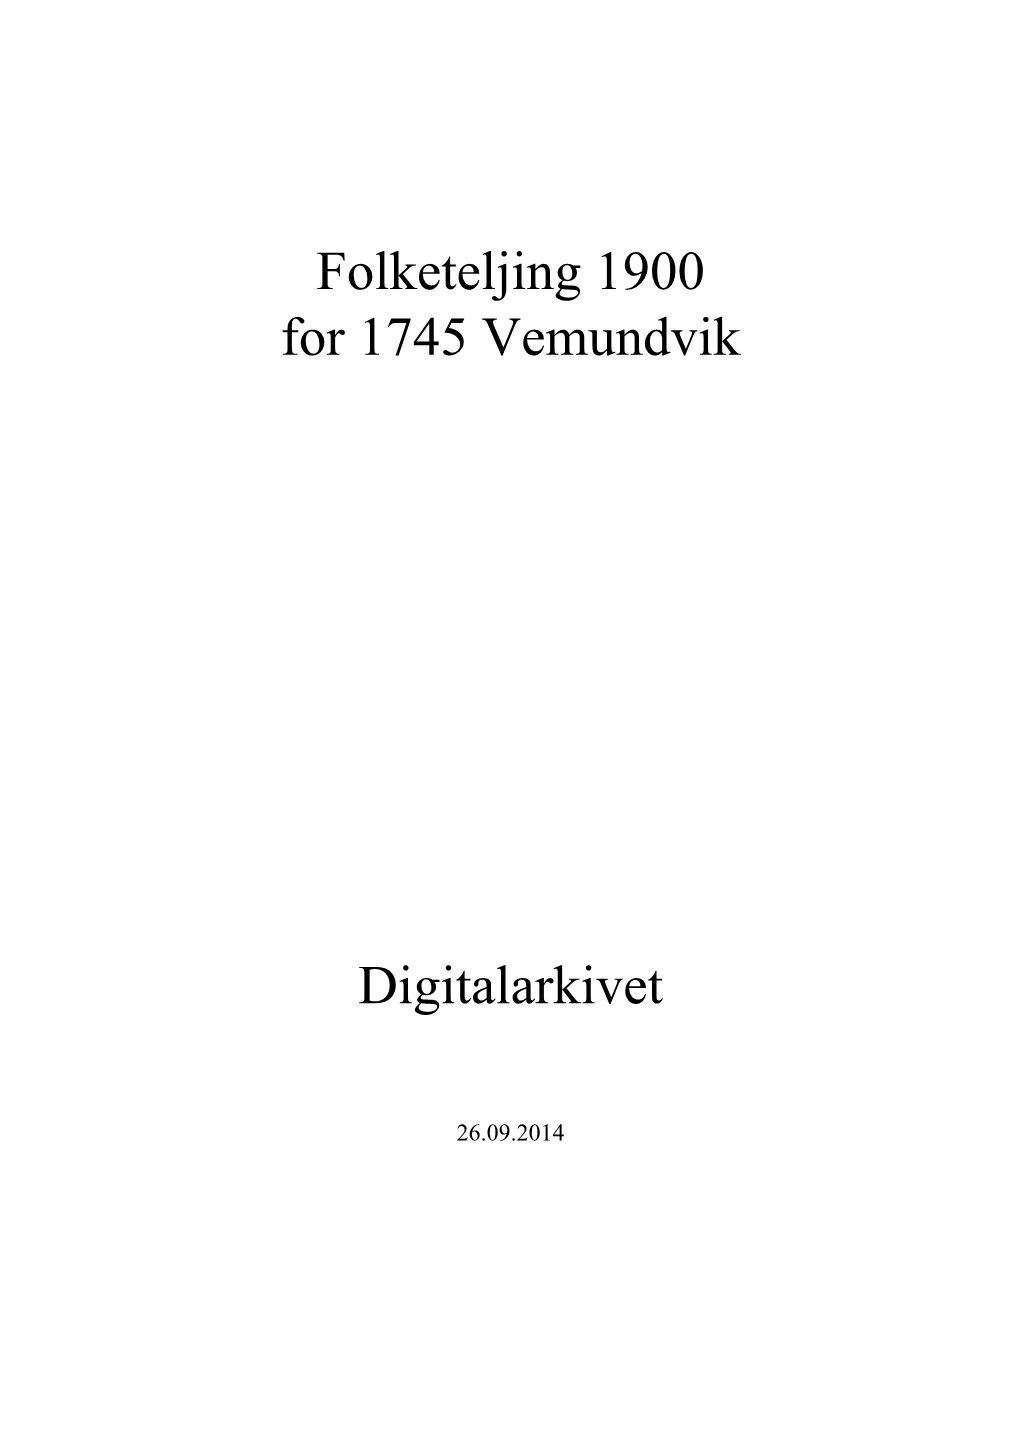 Folketeljing 1900 for 1745 Vemundvik Digitalarkivet